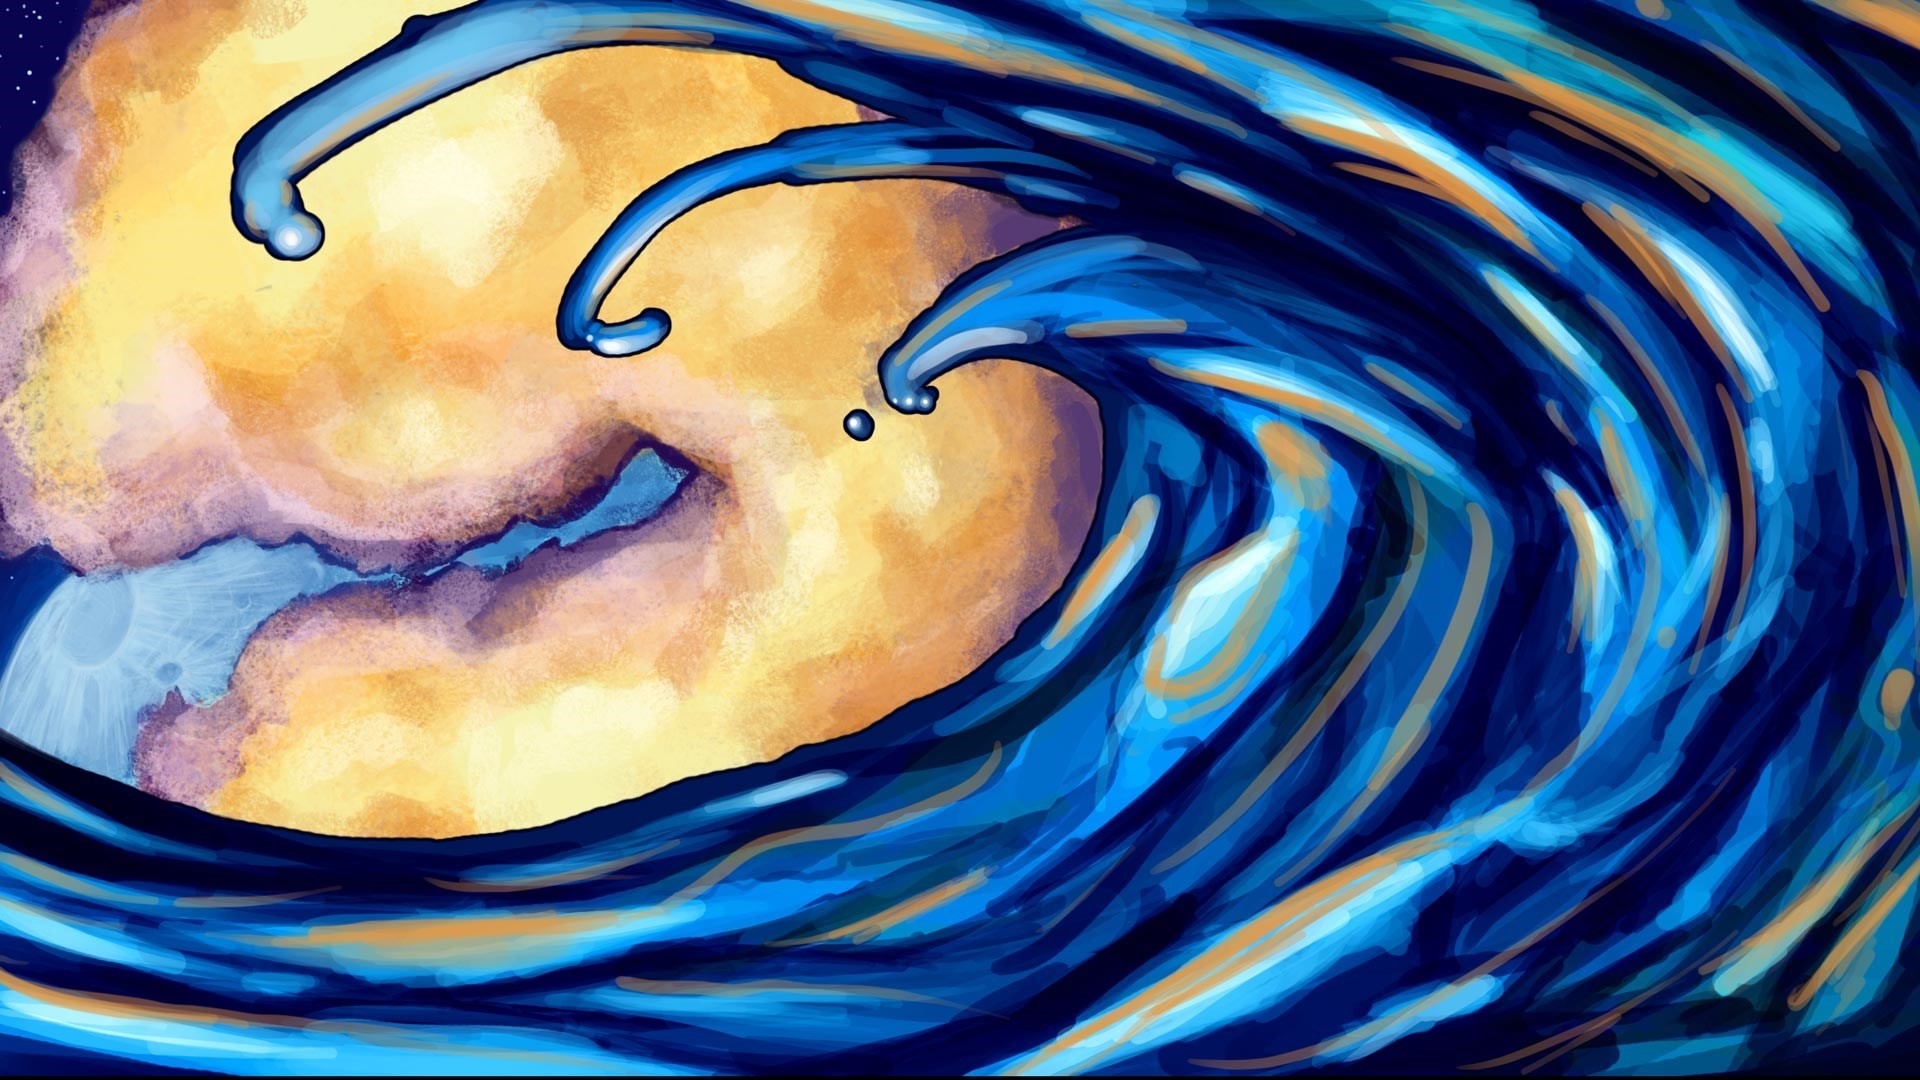 1920x1080 ocean-waves-art-hd-wallpaper - Magic4Walls.com